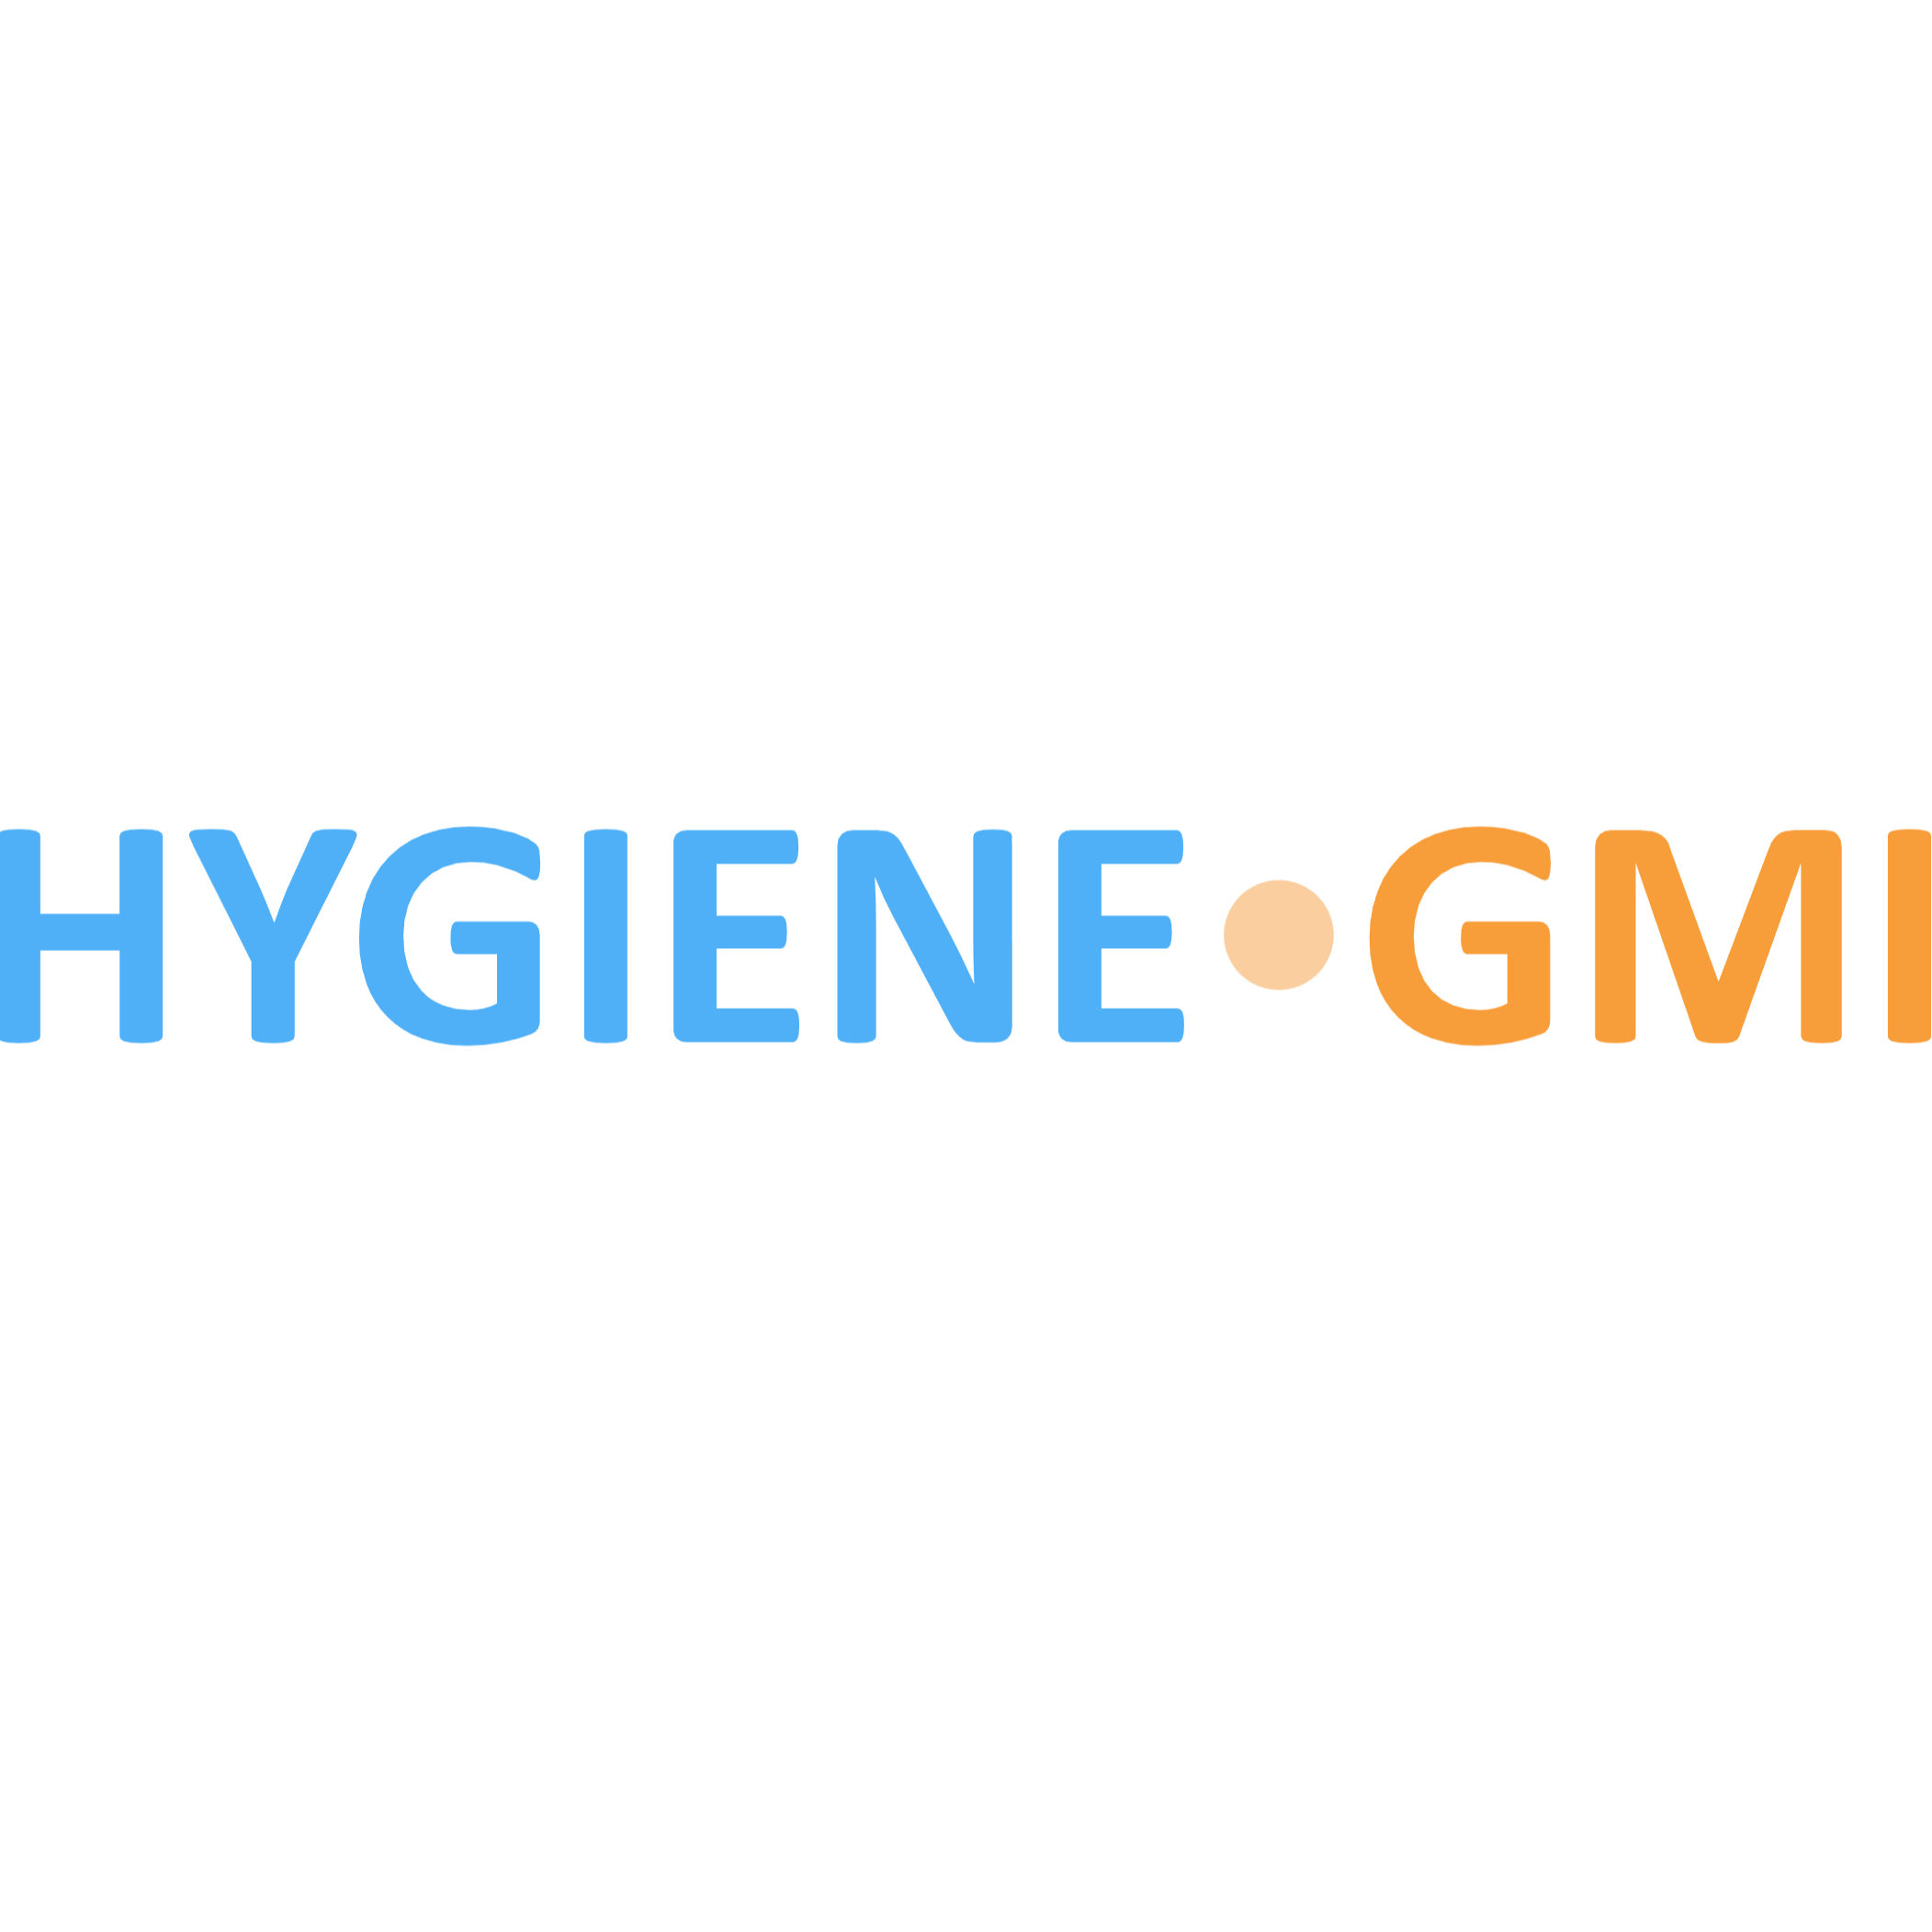 Hygiene GMI in Dernbach bei Dierdorf - Logo